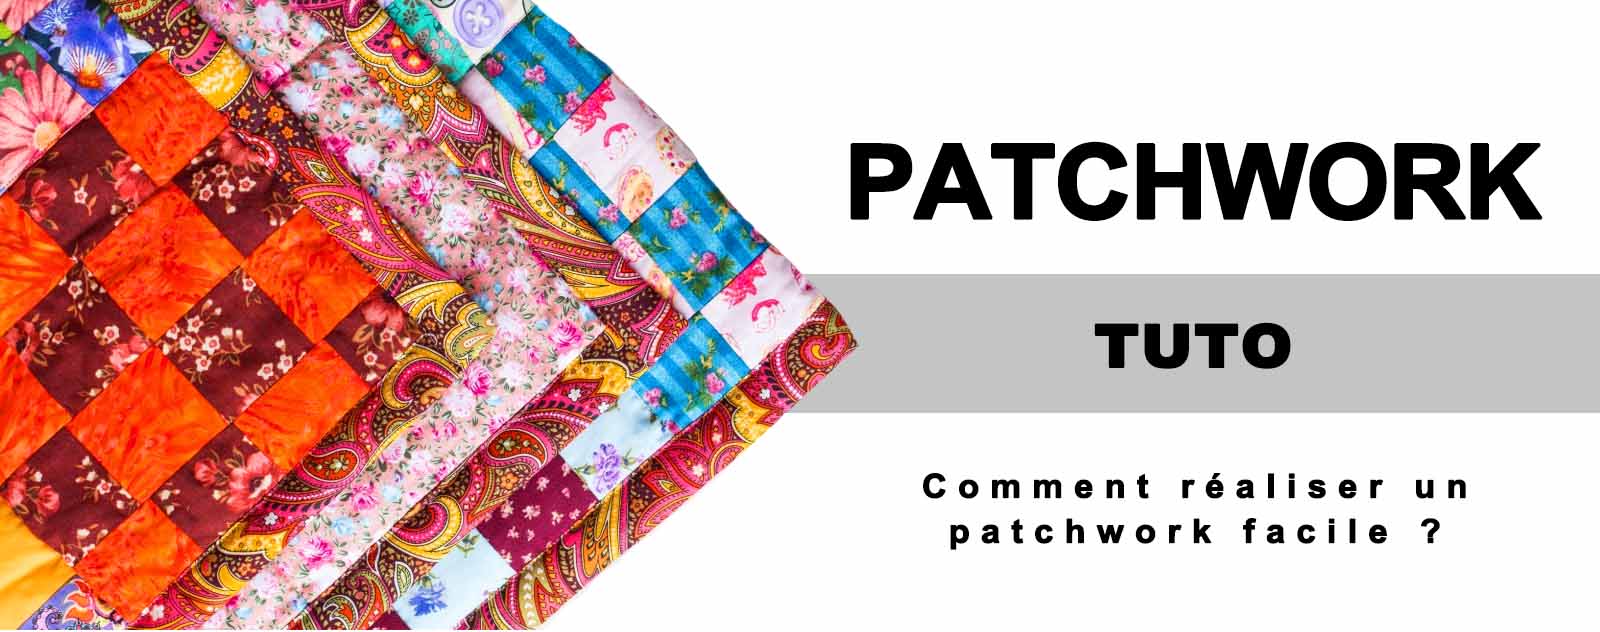 Comment réaliser un patchwork facile ?